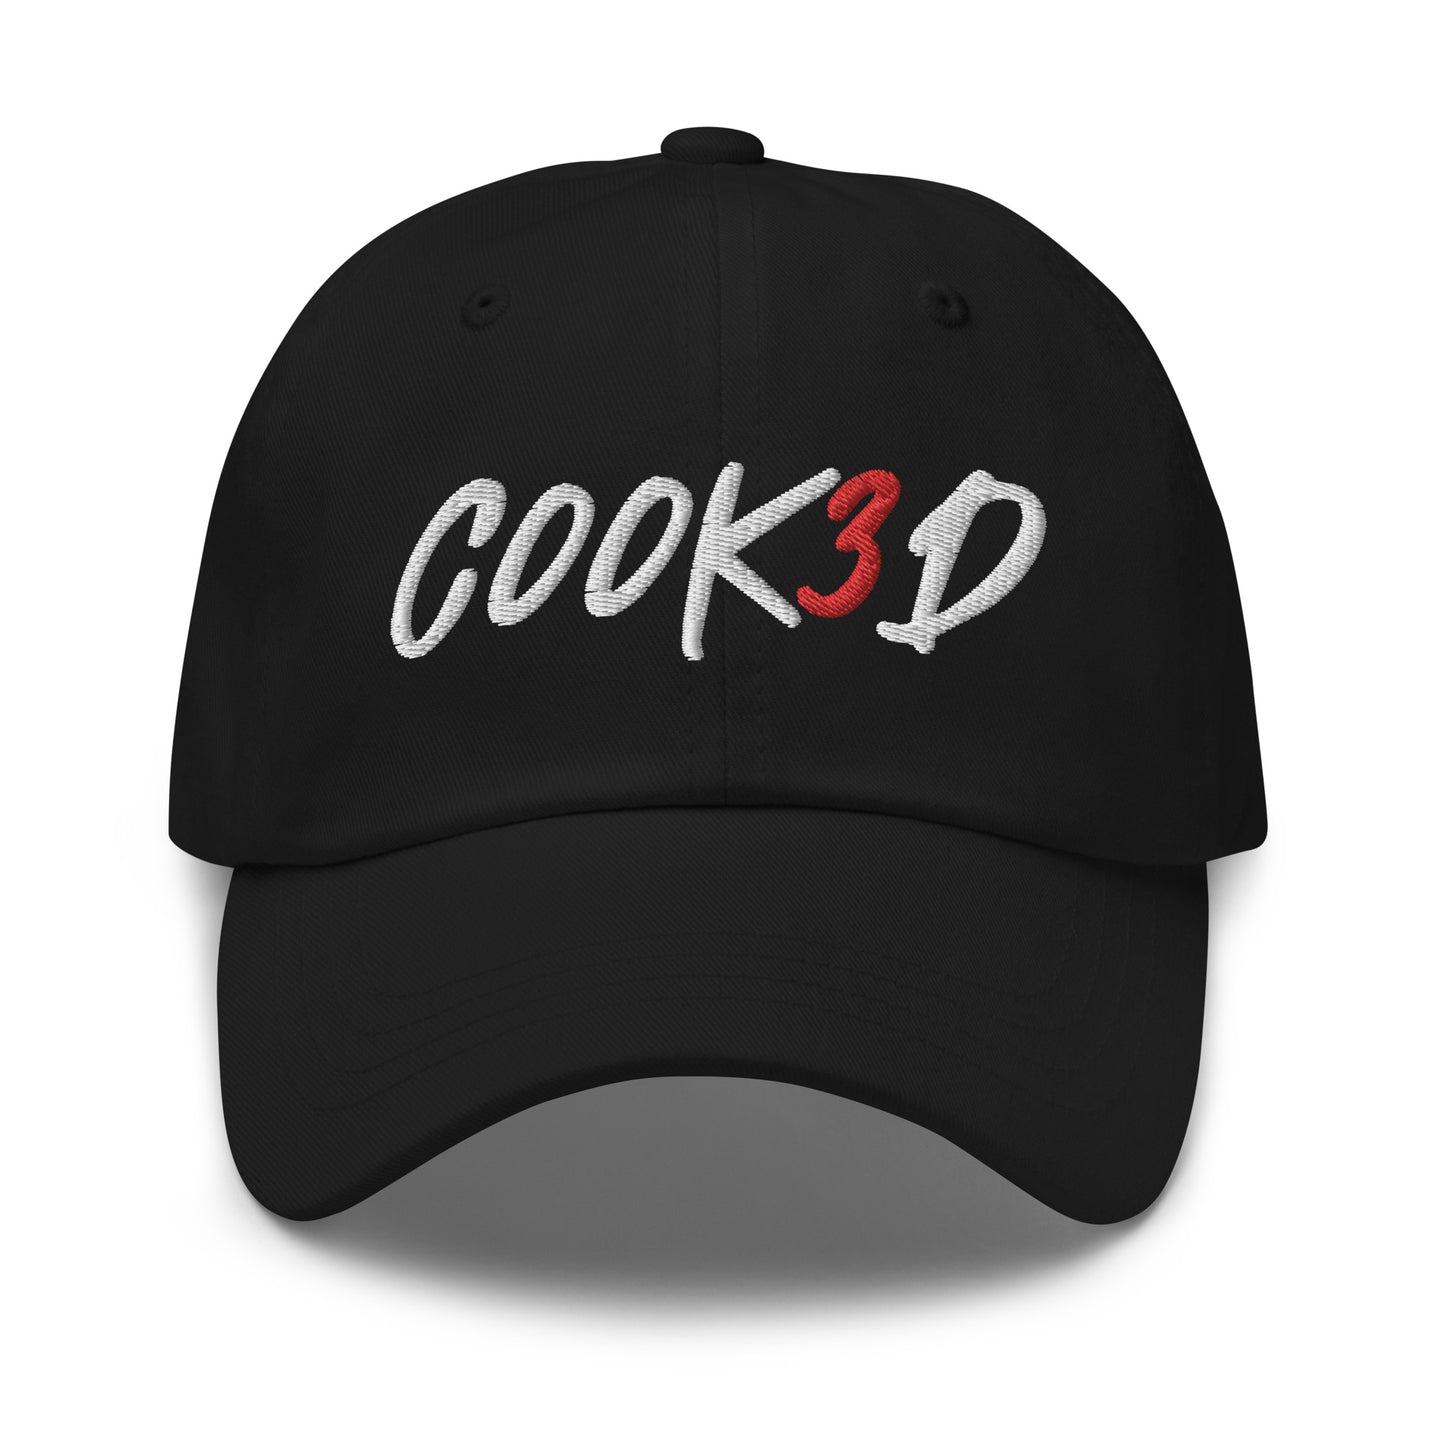 C00K3D Divine Cap